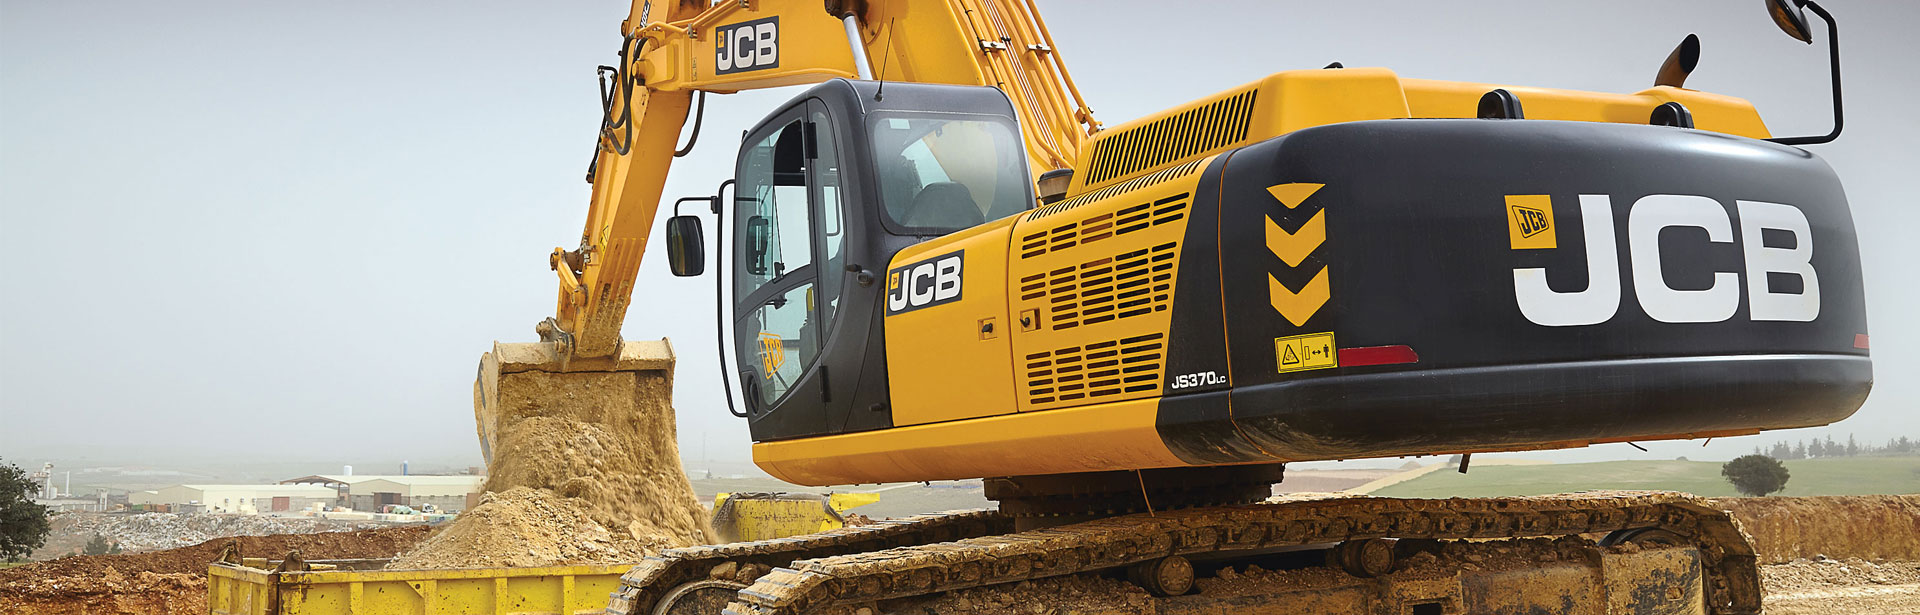 JCB JS370 Tracked Excavators Saudi Arabia